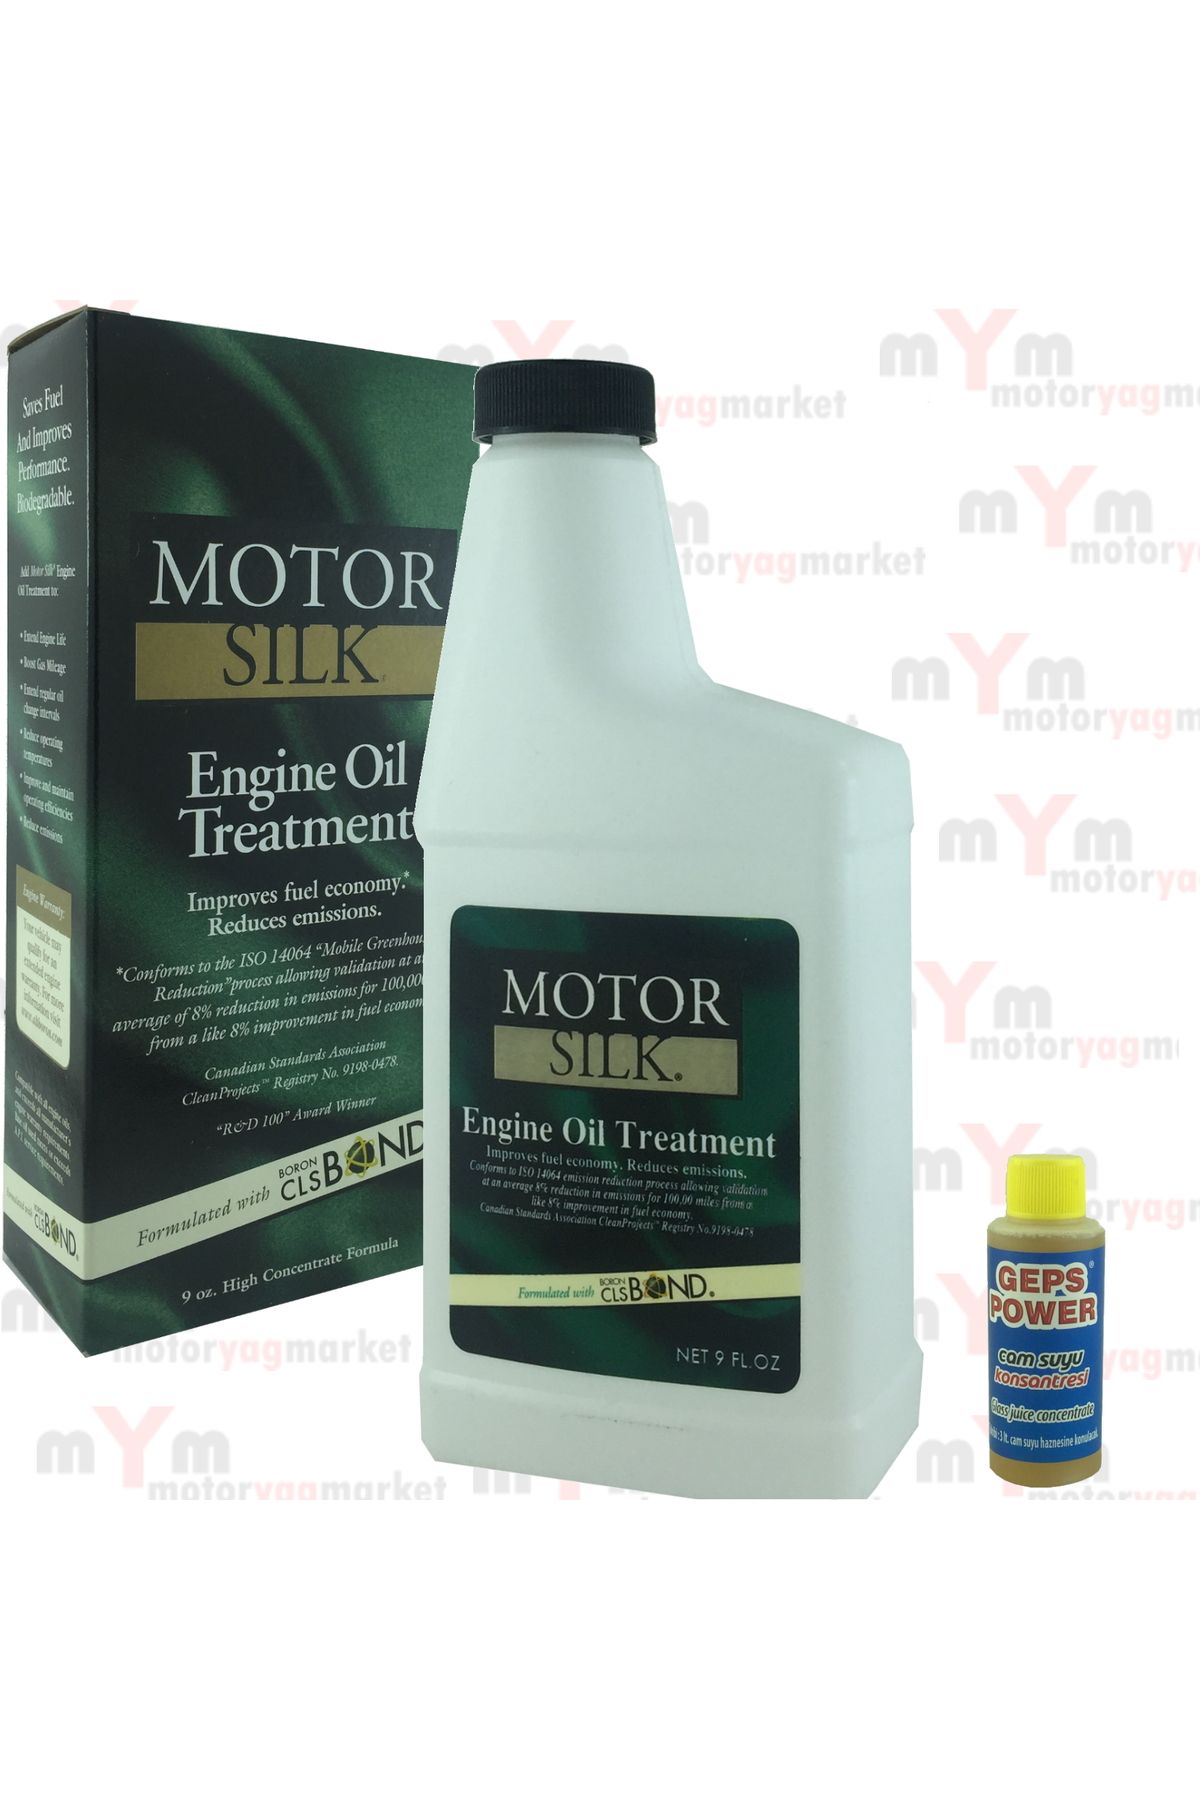 MotorSilk Motor Koruyucu Bor Katkısı +80 ml Konsantre Cam Sabunu | Motor Silk Bor İçerikli Yağ Katkısı